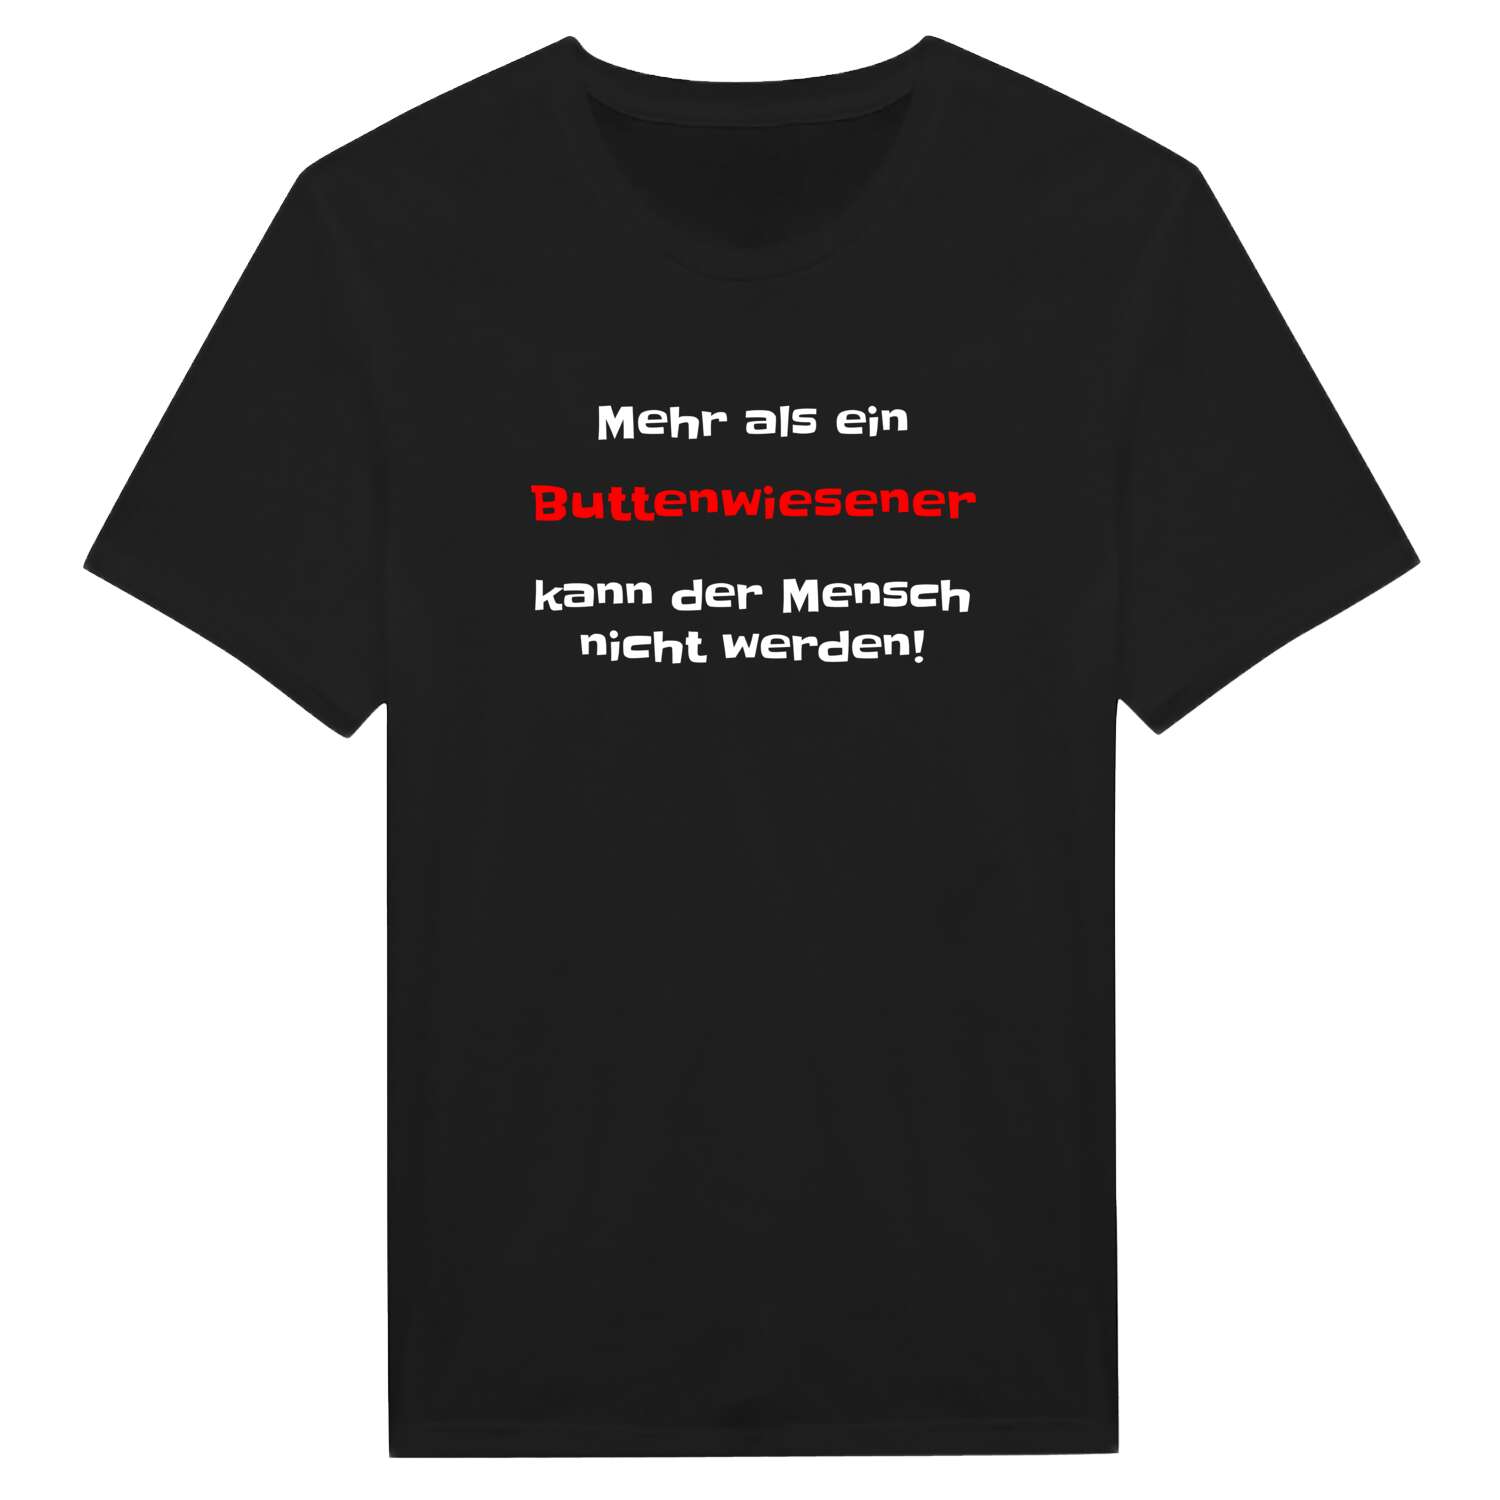 Buttenwiesen T-Shirt »Mehr als ein«